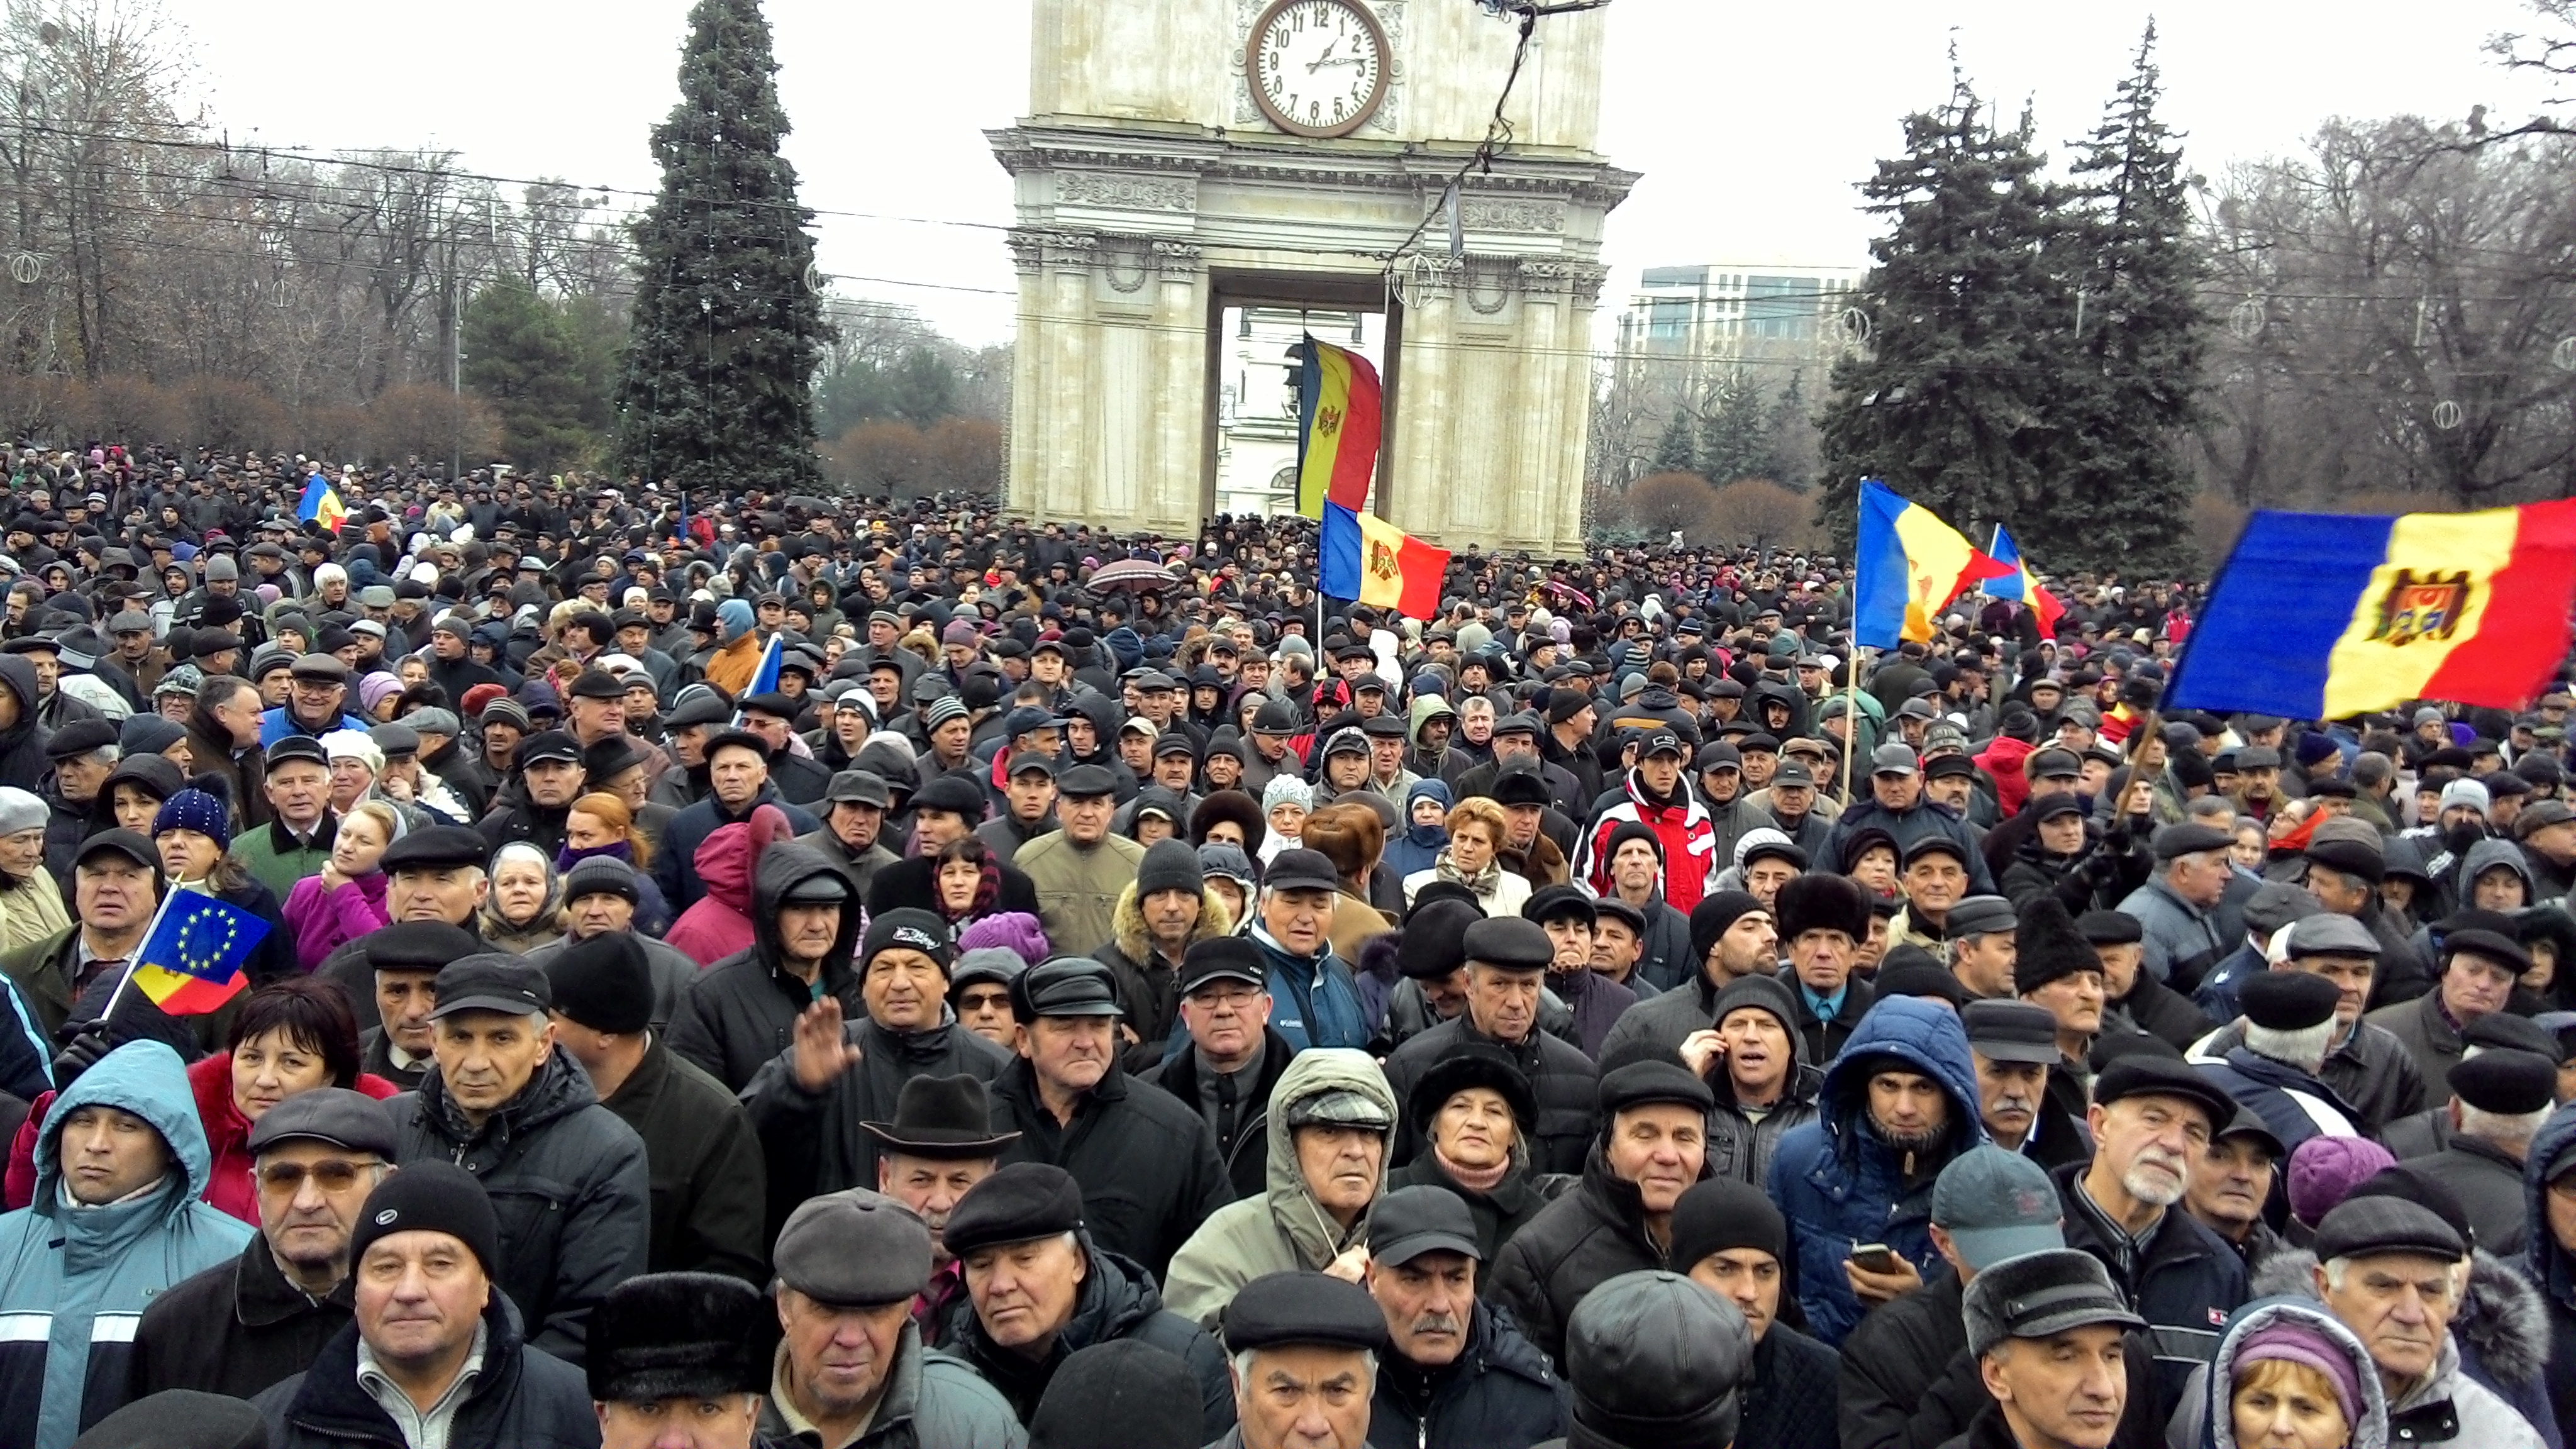 Opoziția organizează proteste masive la Chișinău. Alegerile pentru primăria capitalei, invalidate de justiție. Plahotniuc, acuzat de încălcarea voinței alegătorilor. PPE, consternat de erodarea democrației în Republica Moldova